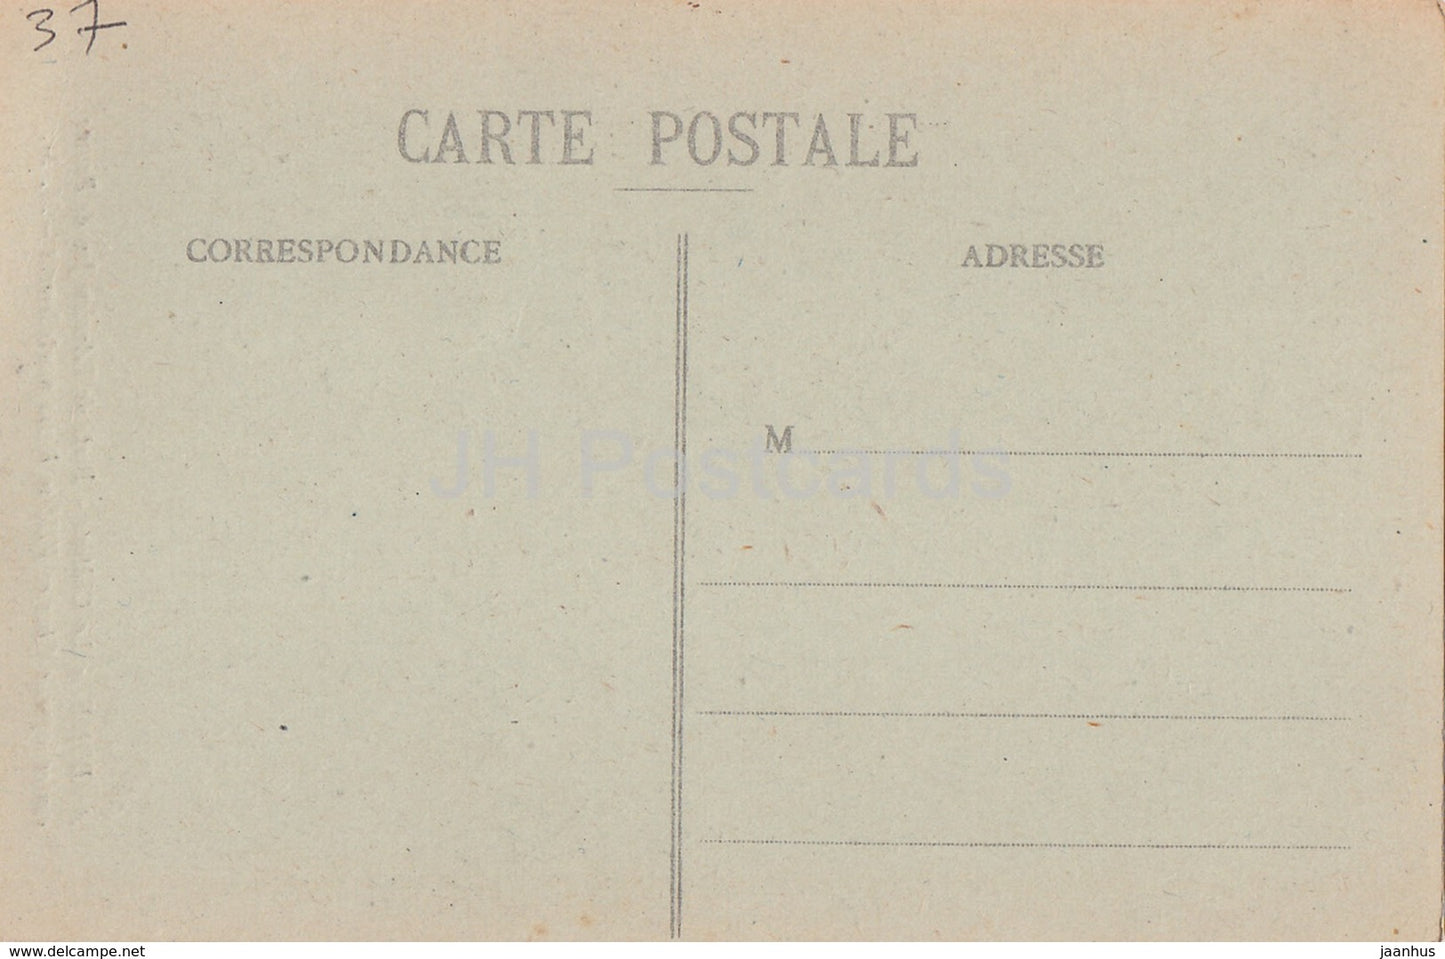 Amboise - Le Chateau - Porte de l'Ancien - castle - old postcard - France - unused